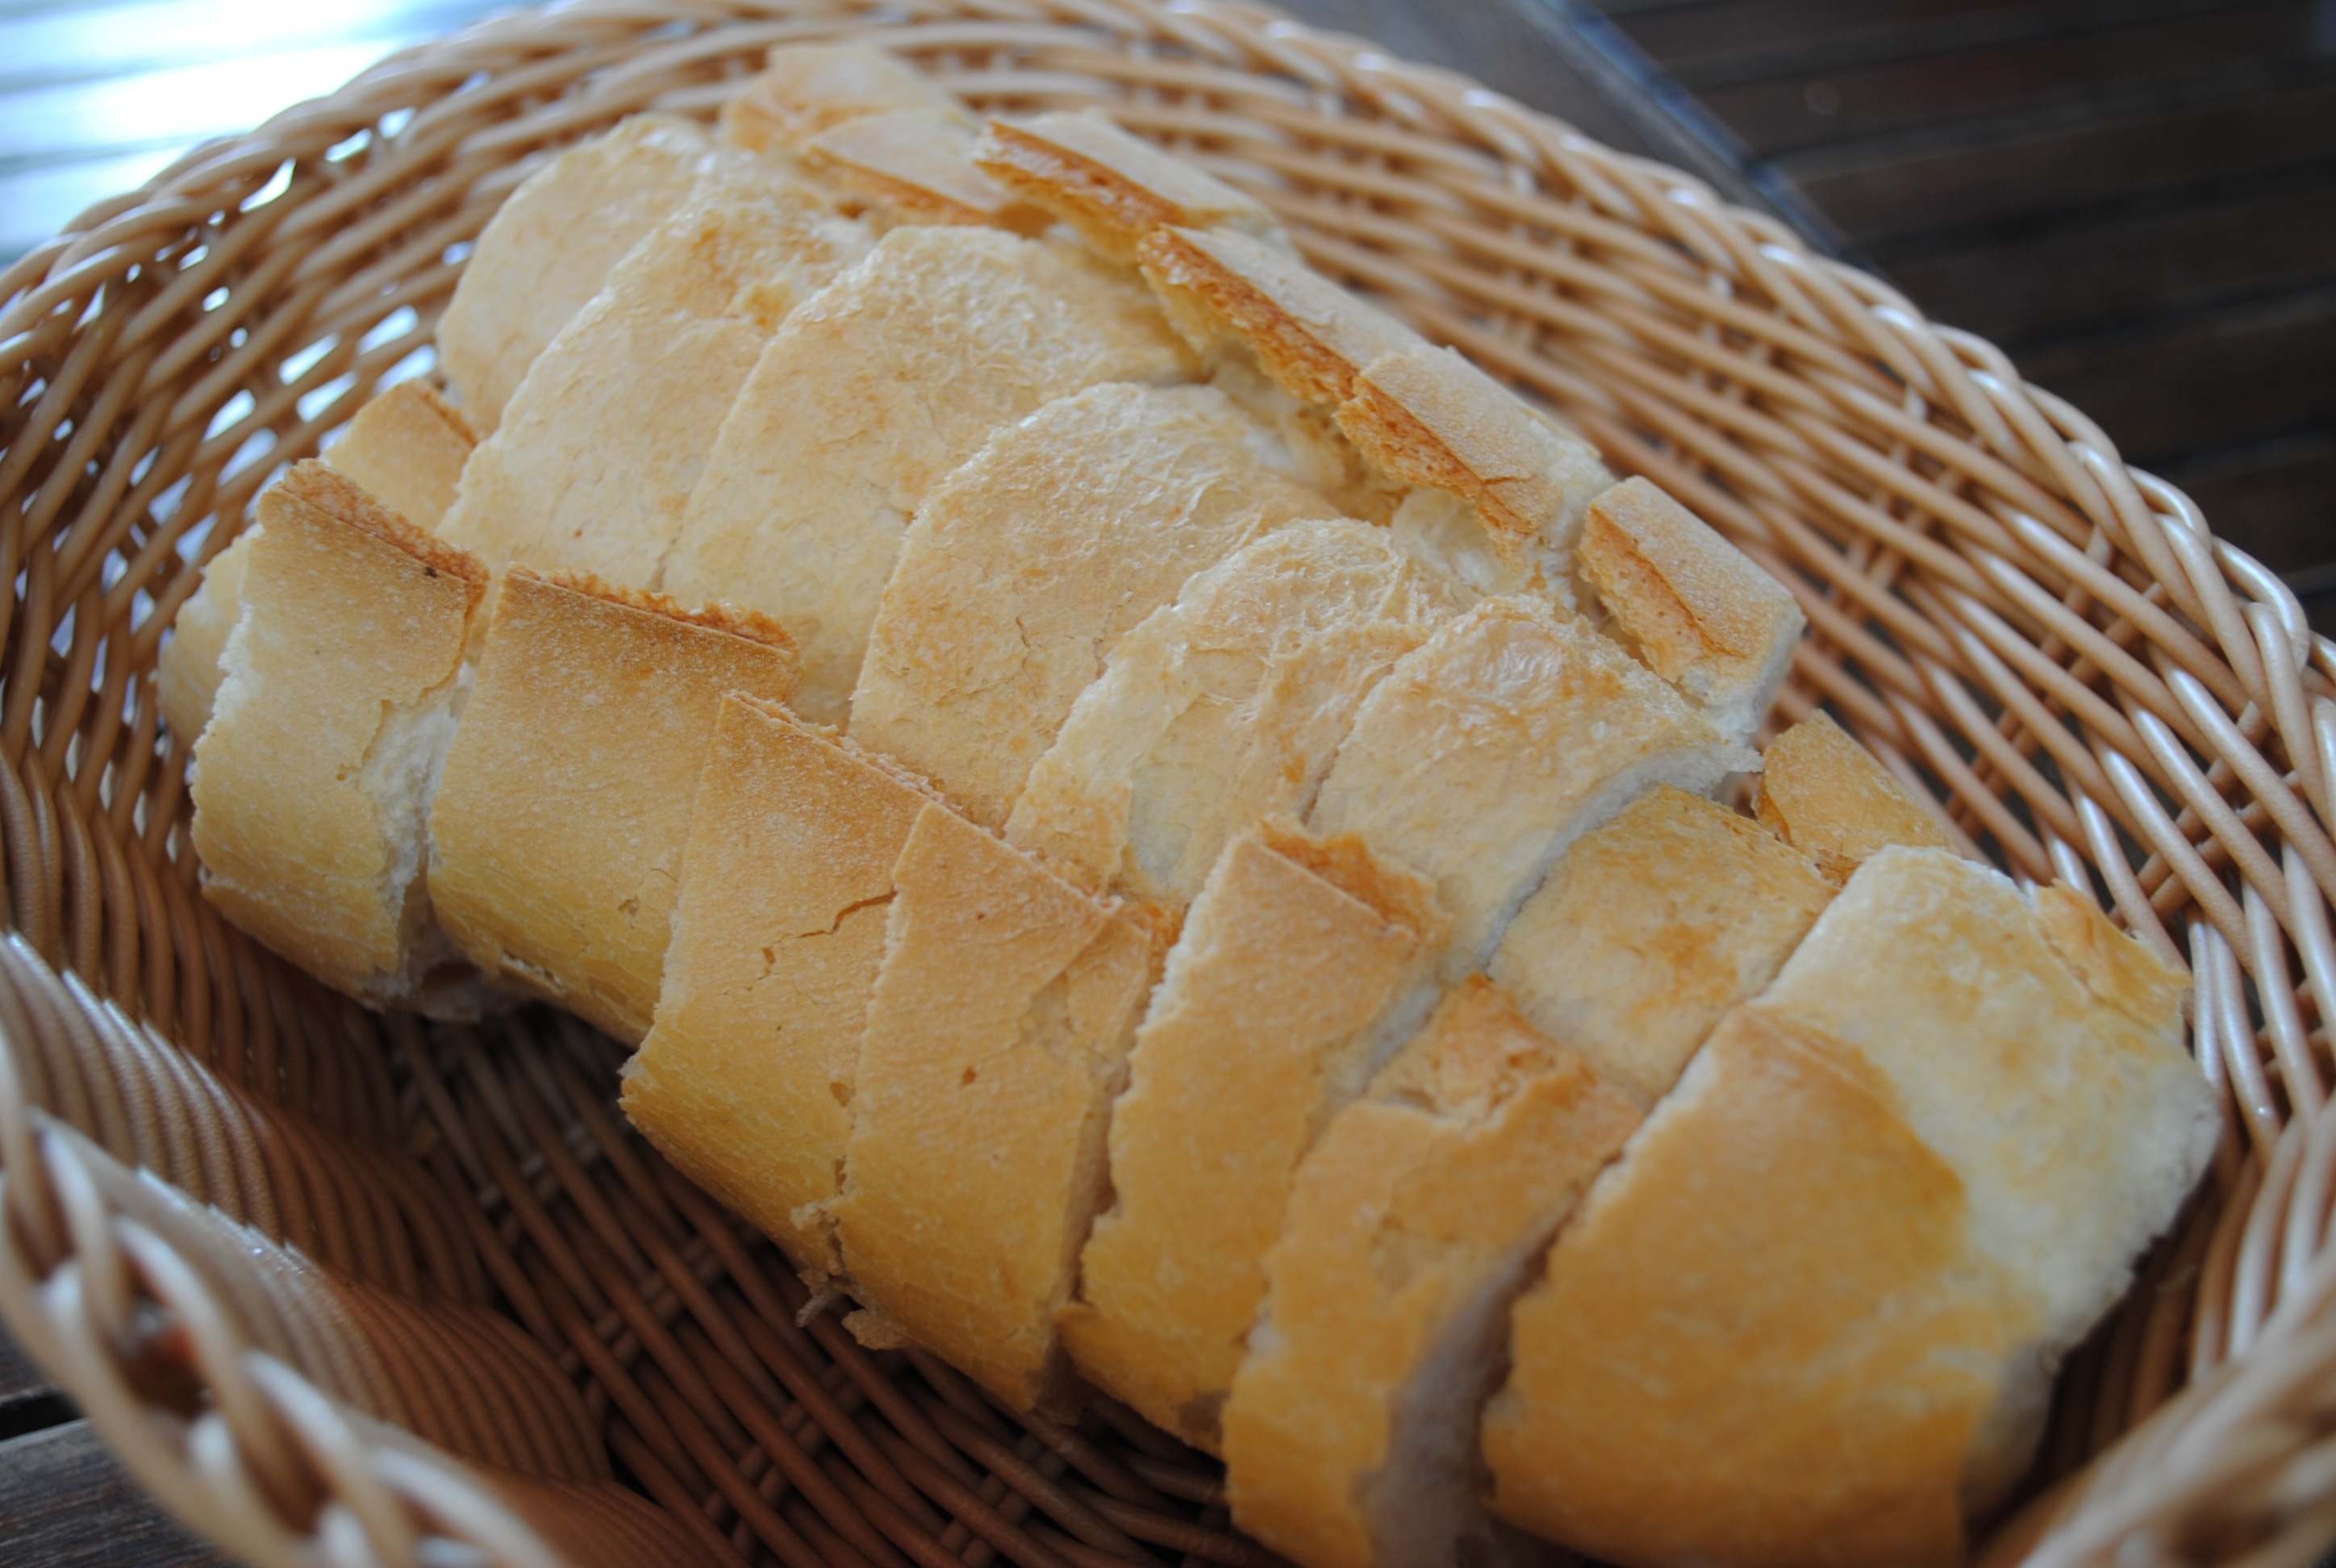 8 sliced loaf breads